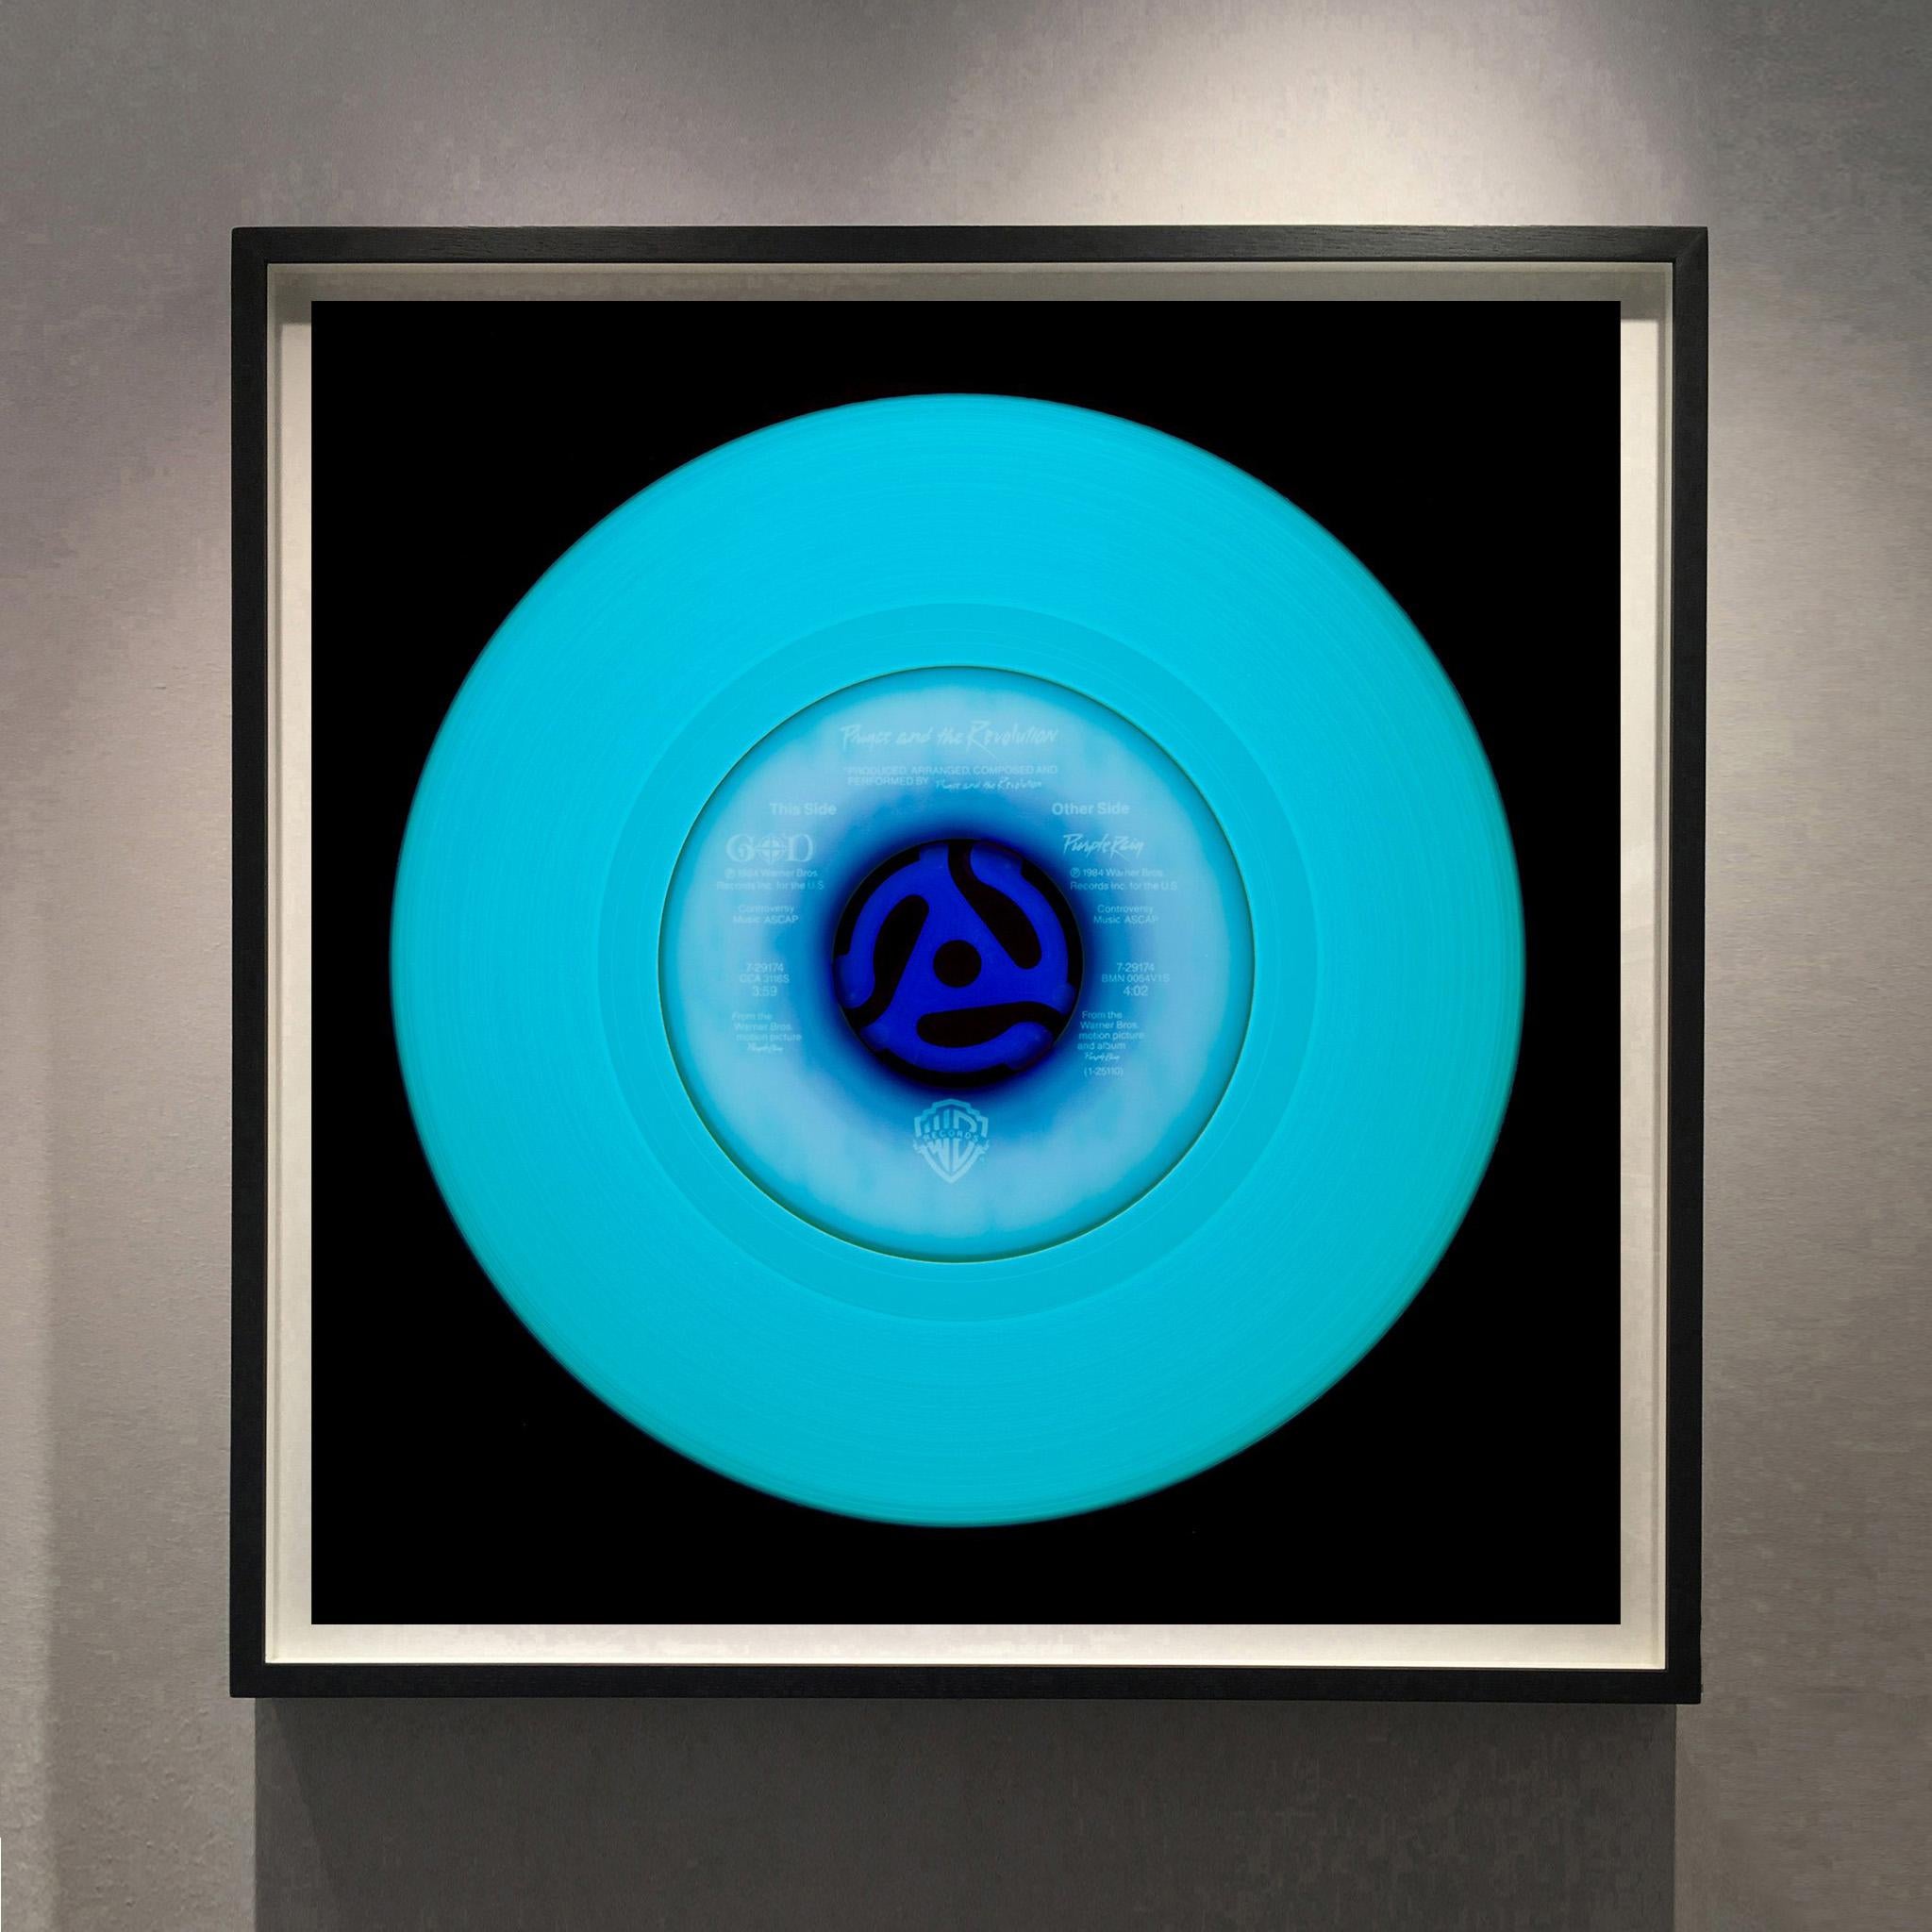 Vinyl-Kollektion, Other Side (Blau) – Konzeptionelle Farbfotografie der Pop-Art – Print von Heidler & Heeps